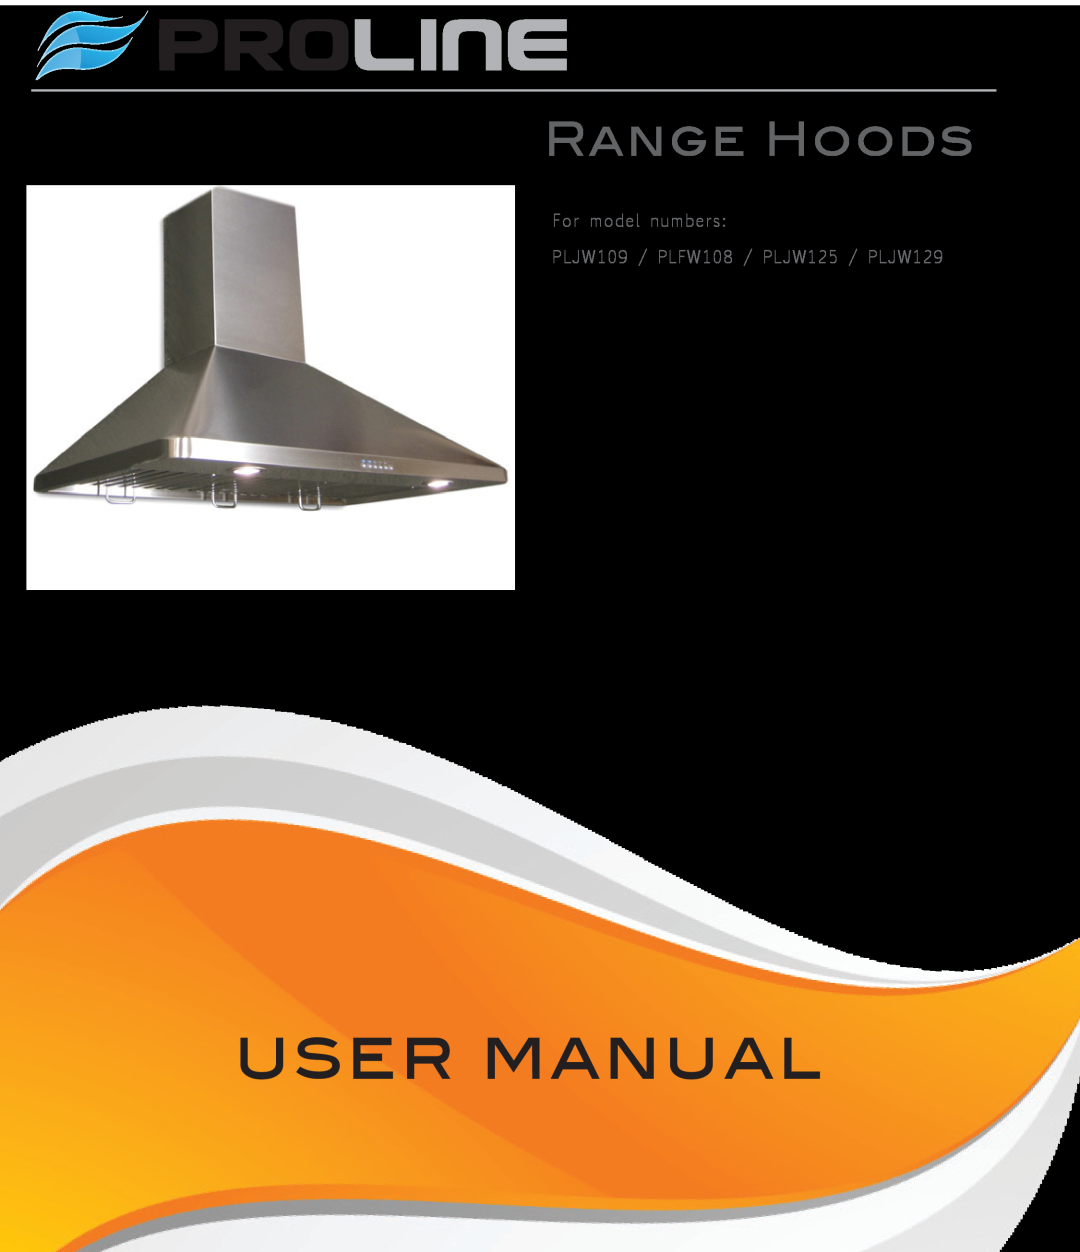 Proline user manual Proline, Range Hoods, For model numbers PLJW109 / PLFW108 / PLJW125 / PLJW129 